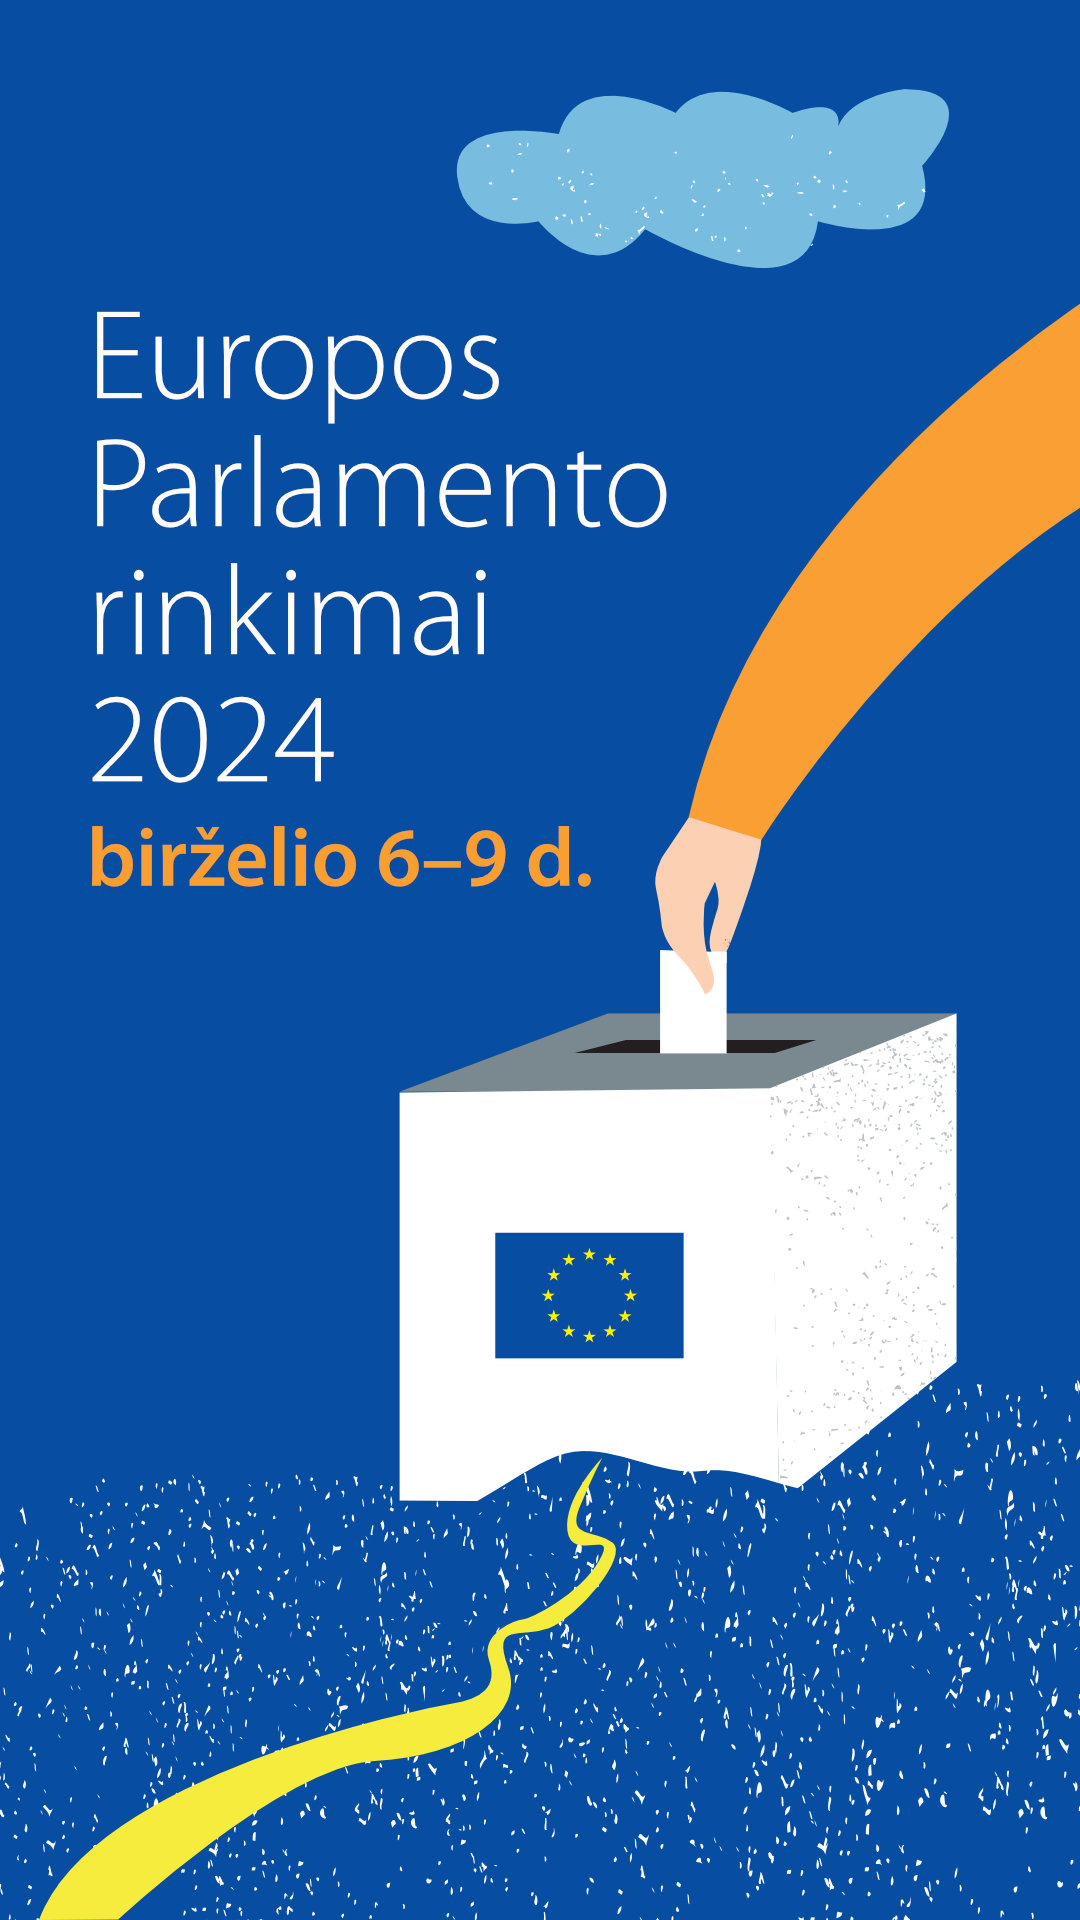 Europos Parlamento rinkimai 2024 - Story.jpg